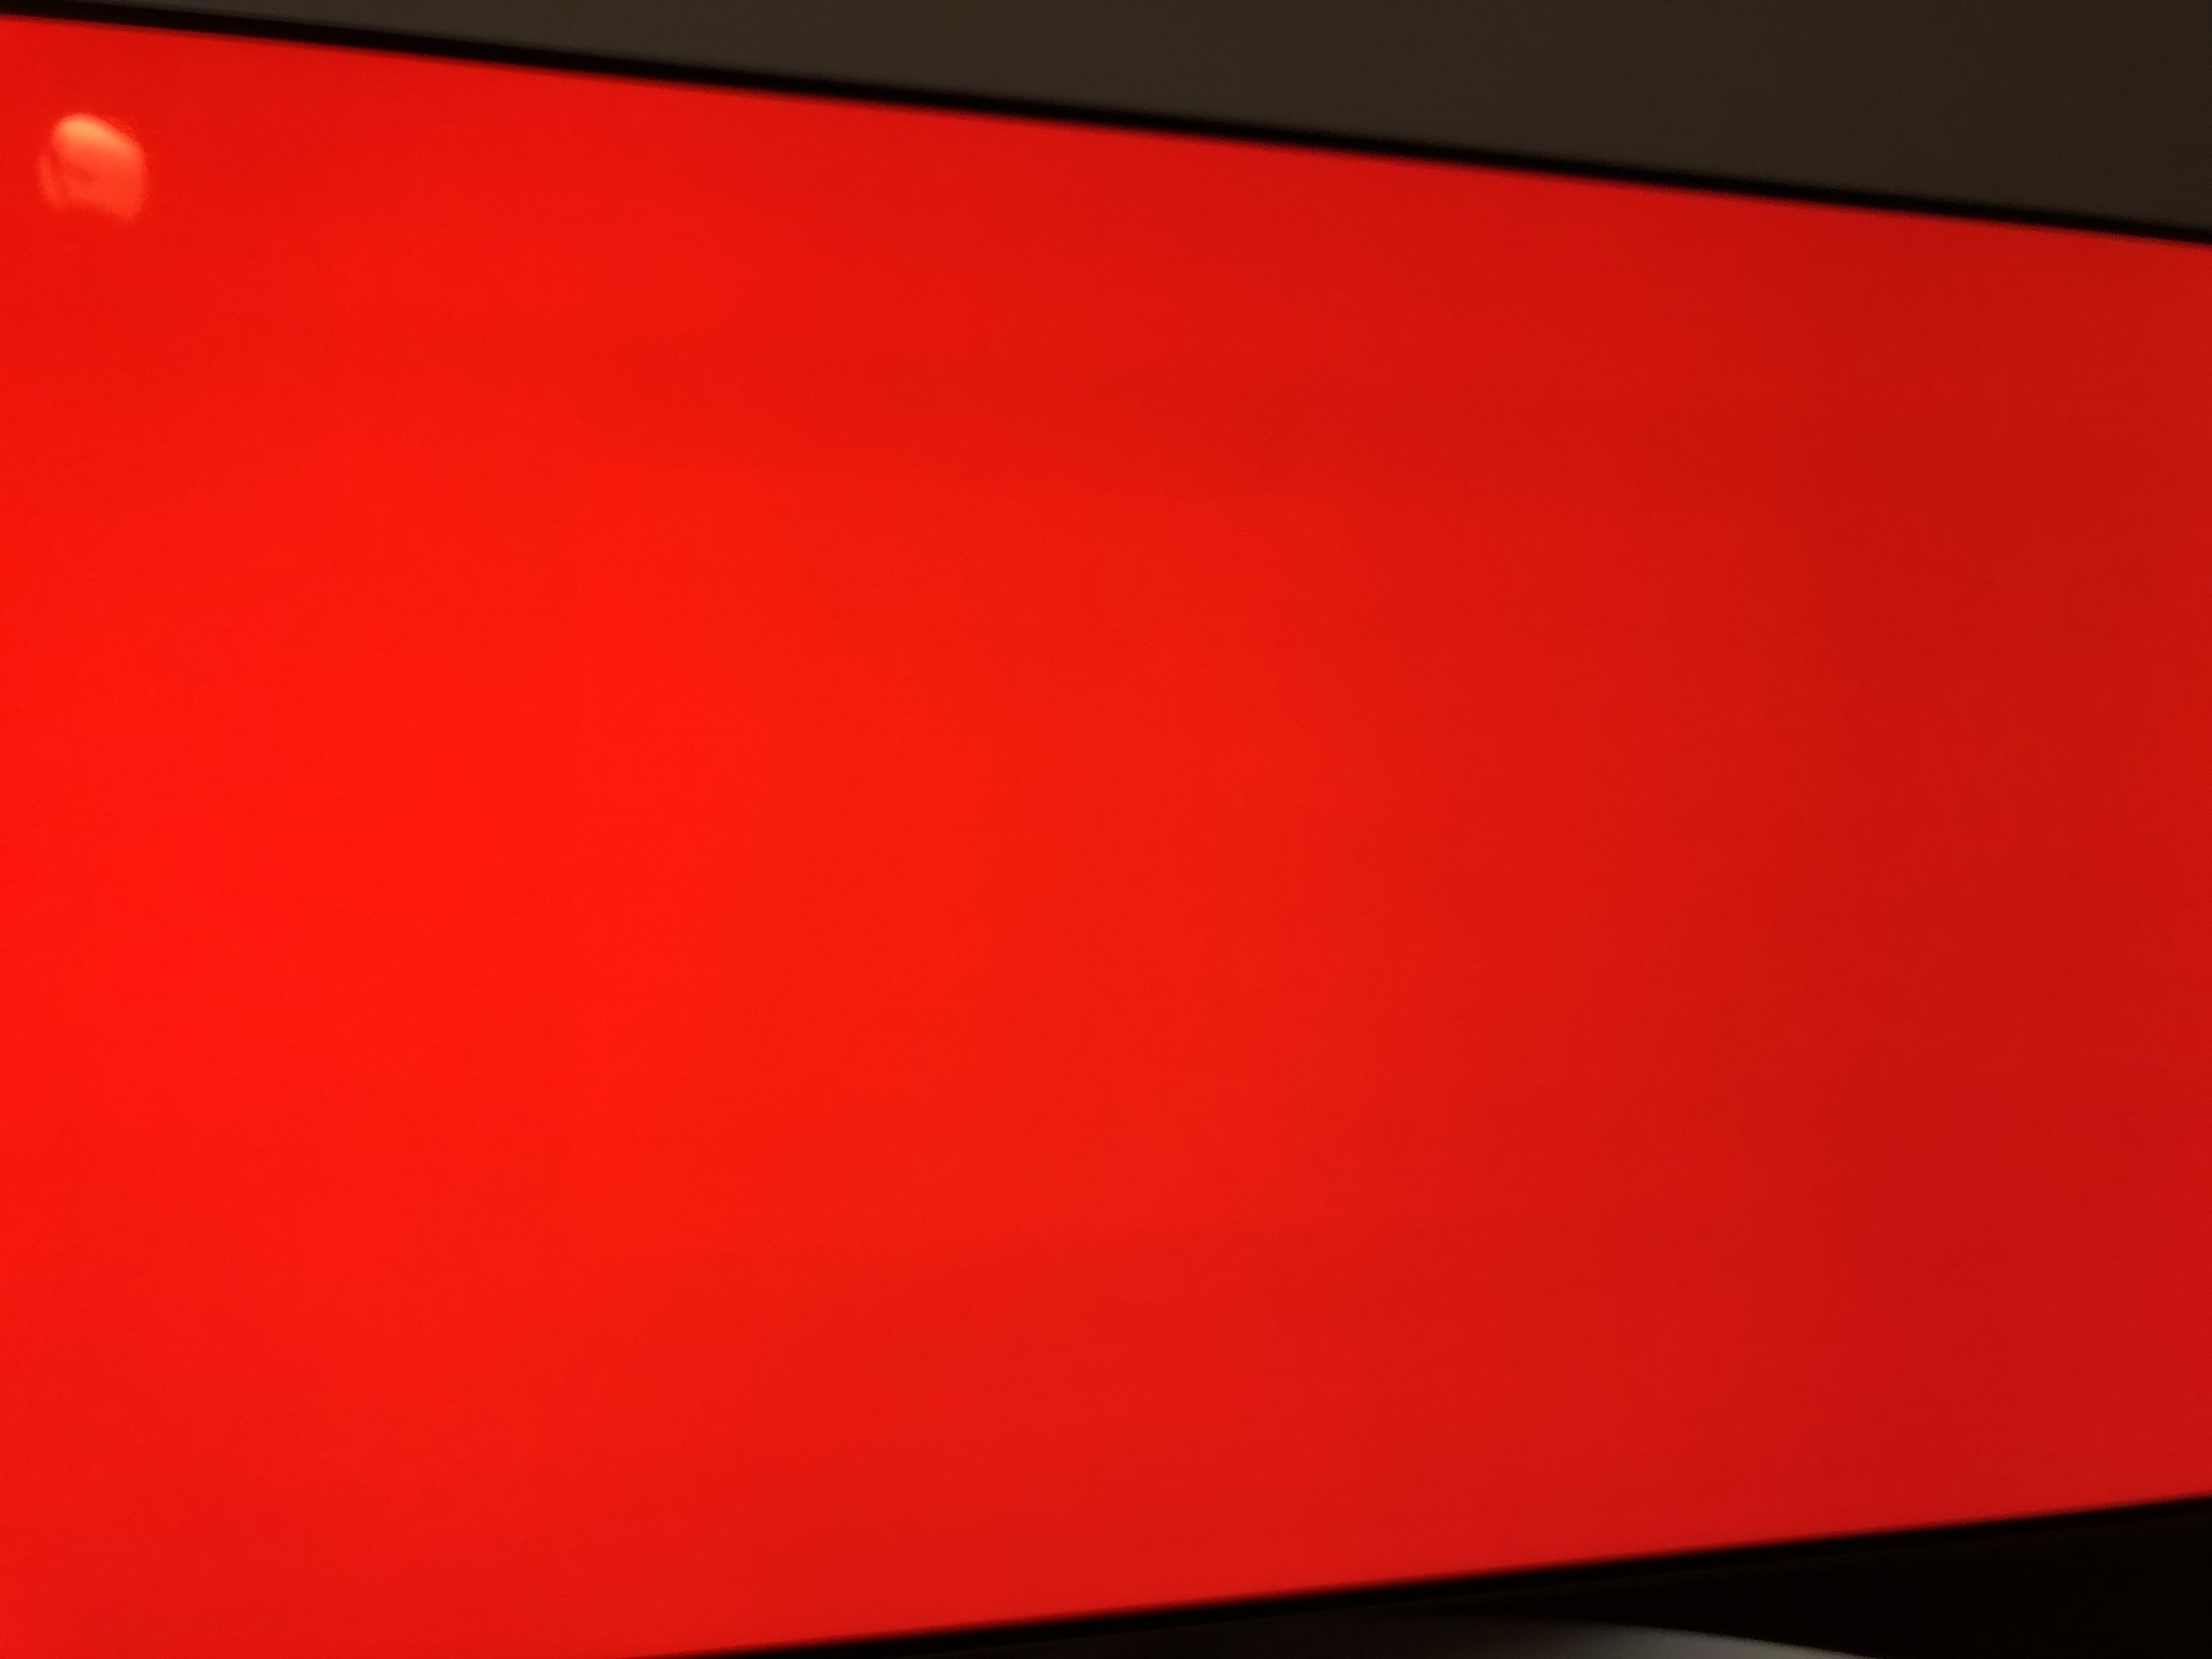 LG 2017 OLED TV [B7-C7-E7-W7]